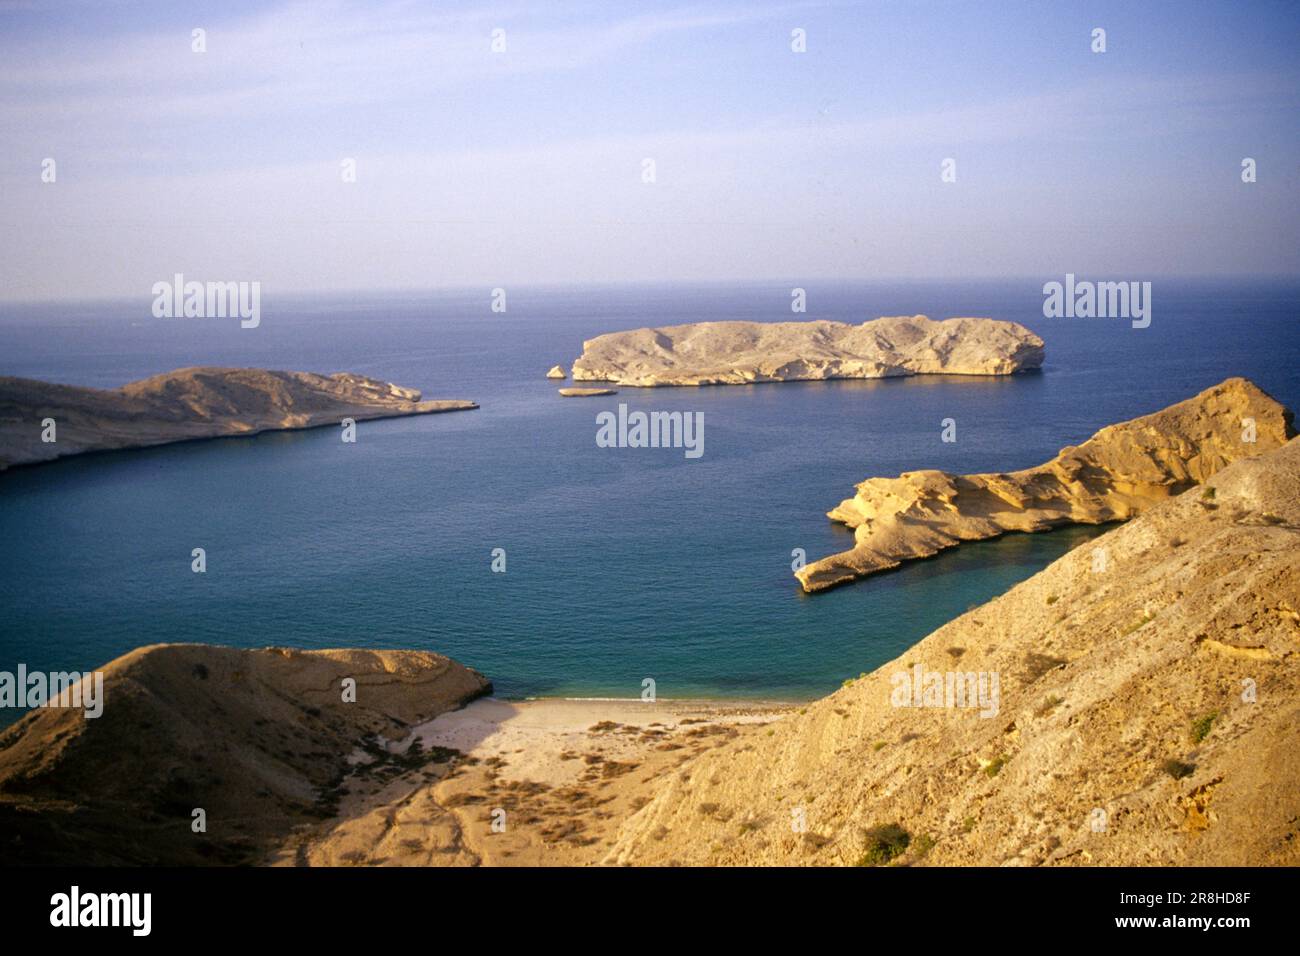 Baie. Côte orientale. Oman. Asie Banque D'Images